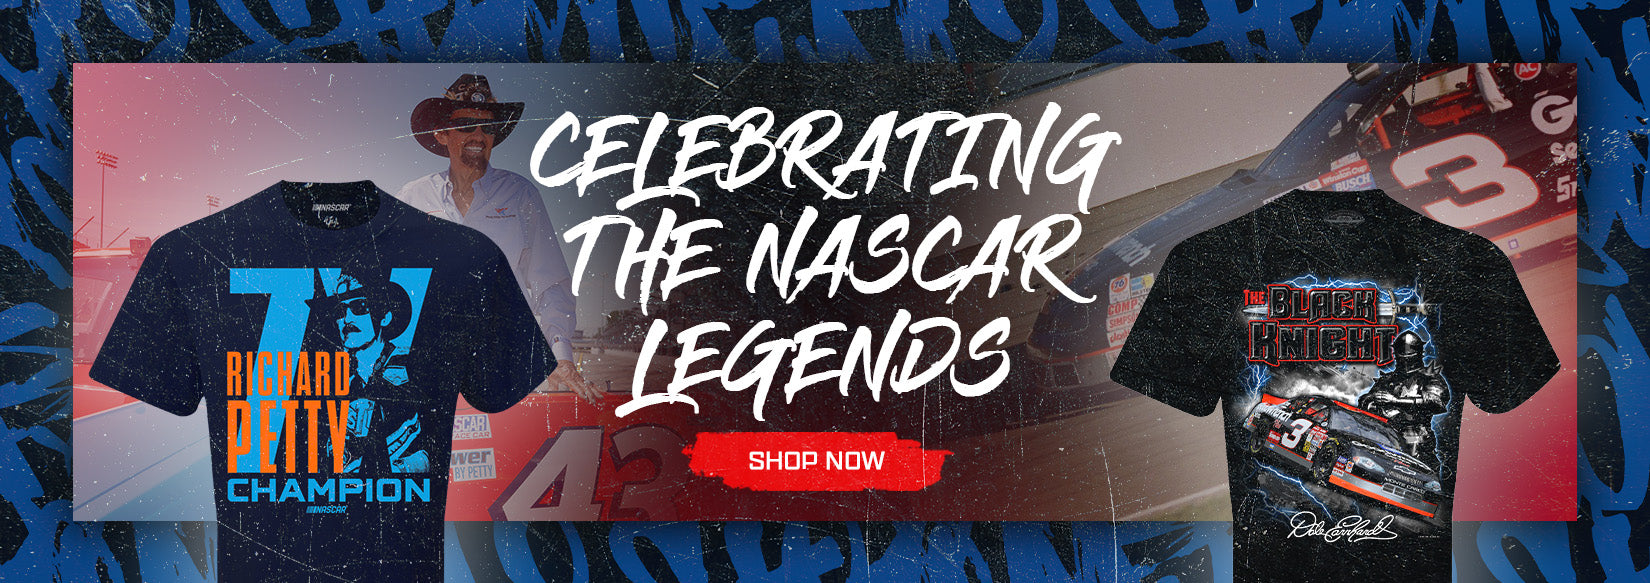 Celebrating The NASCAR Legends - SHOP NOW